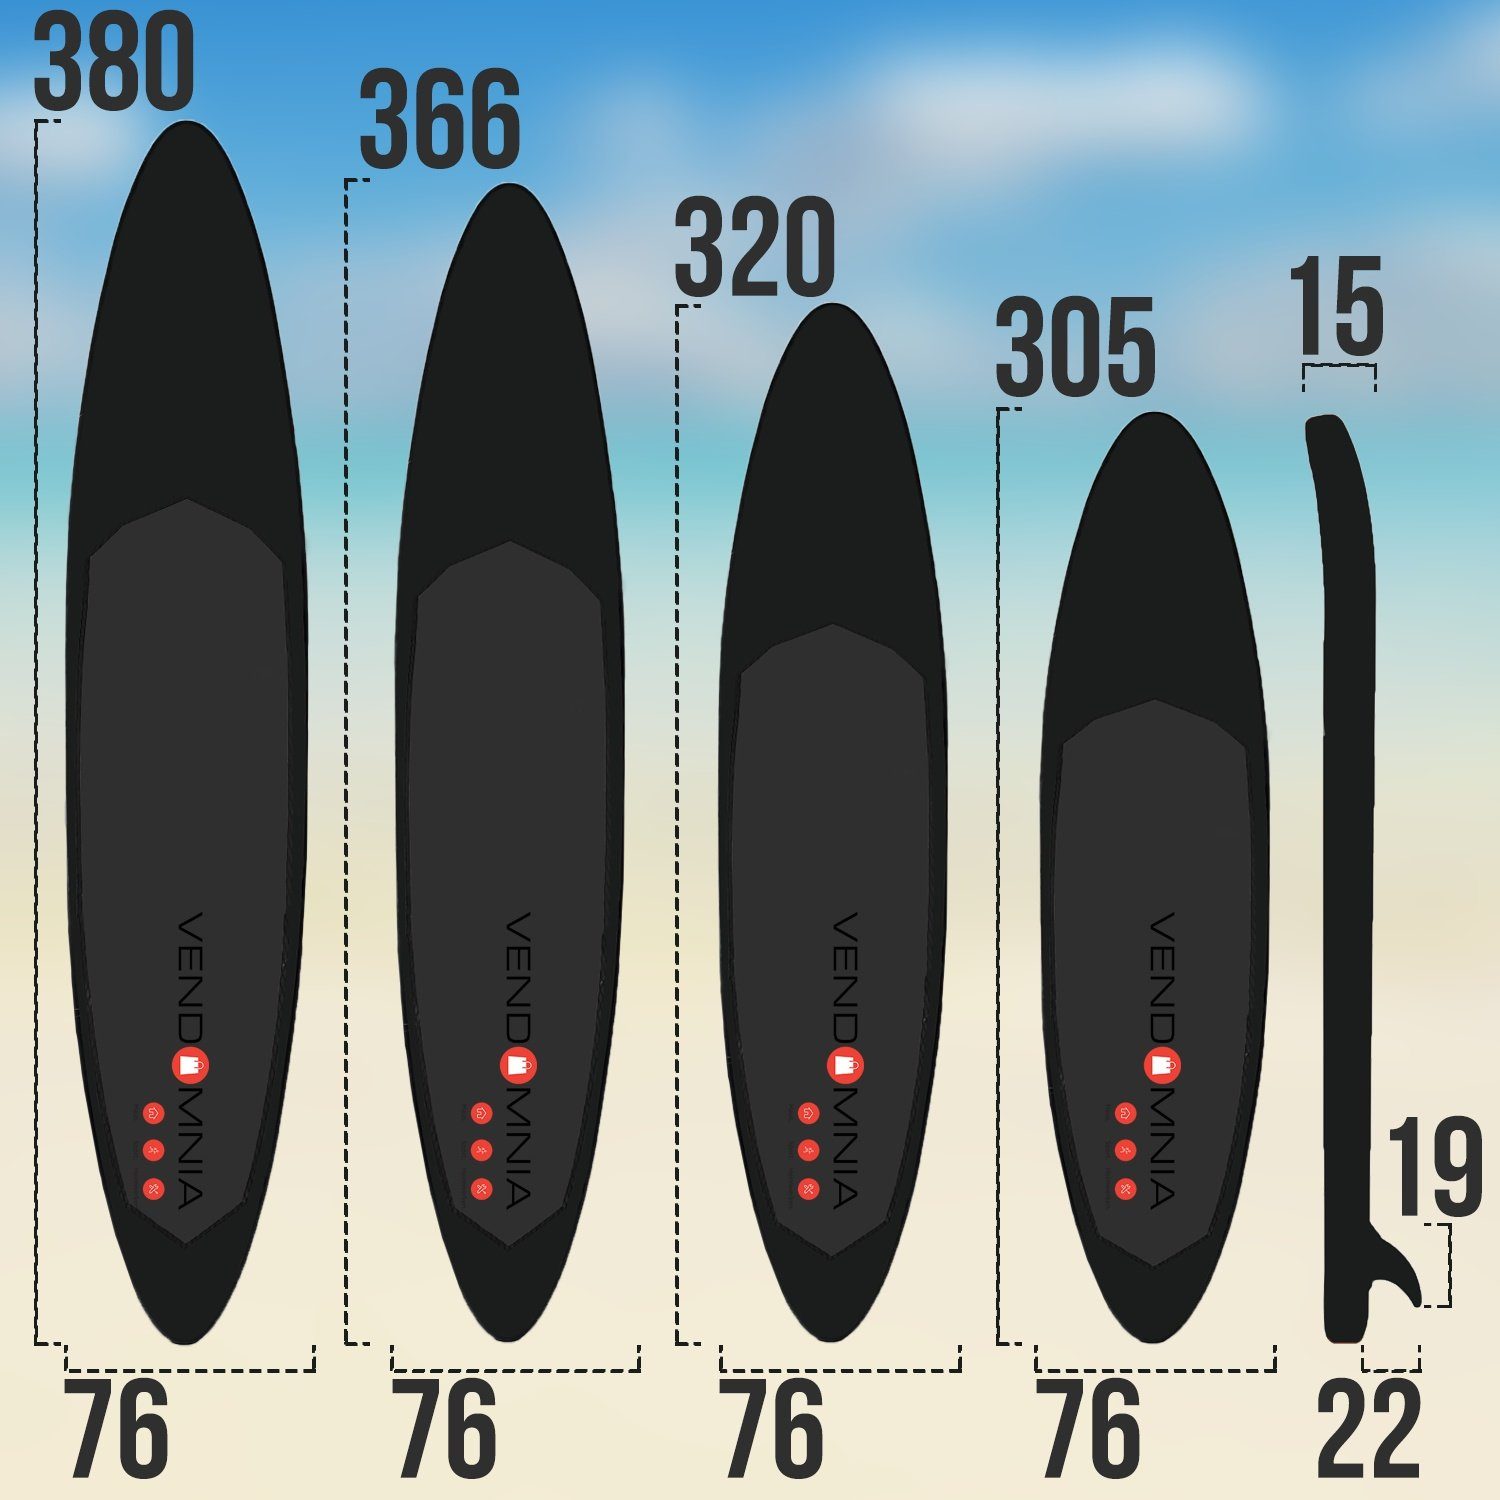 VENDOMNIA Inflatable SUP-Board (Punktmuster) 6: kg, Tragetasche, Farben, 4 PVC 130 Modell (15 7 Schichten, Up 366cm 3 305cm Stand 380cm, Paddelboard, Paddling - Pumpe, Zubehör, Paddle Surfboard) Set dick, Größen board, 320cm Weiß-Blau max aufblasbar, cm Board